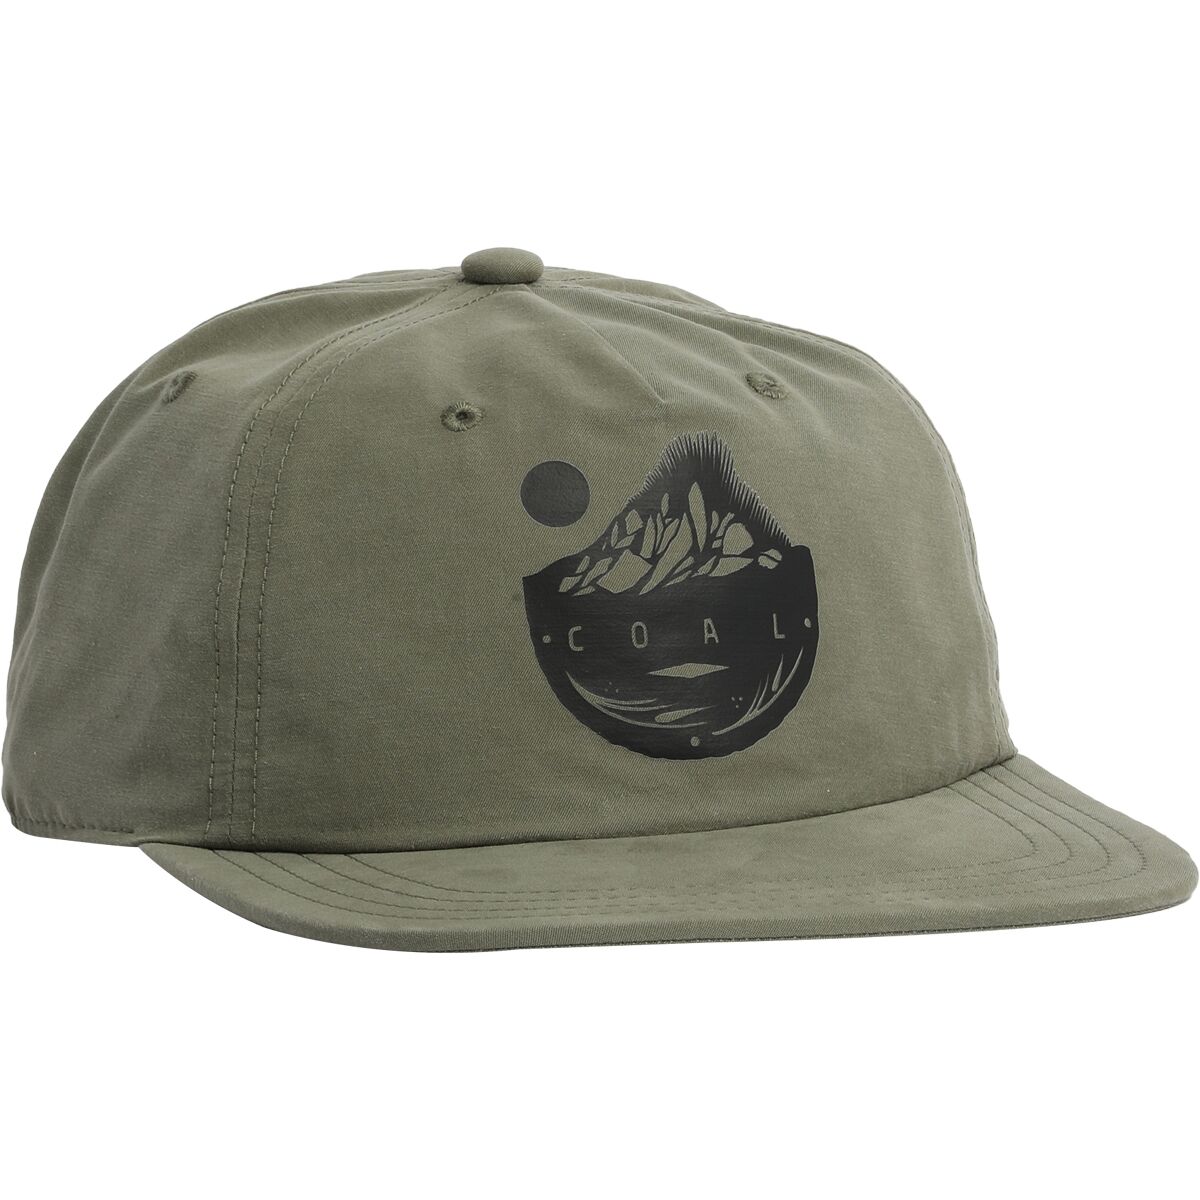 Coal Headwear Poudre Hat